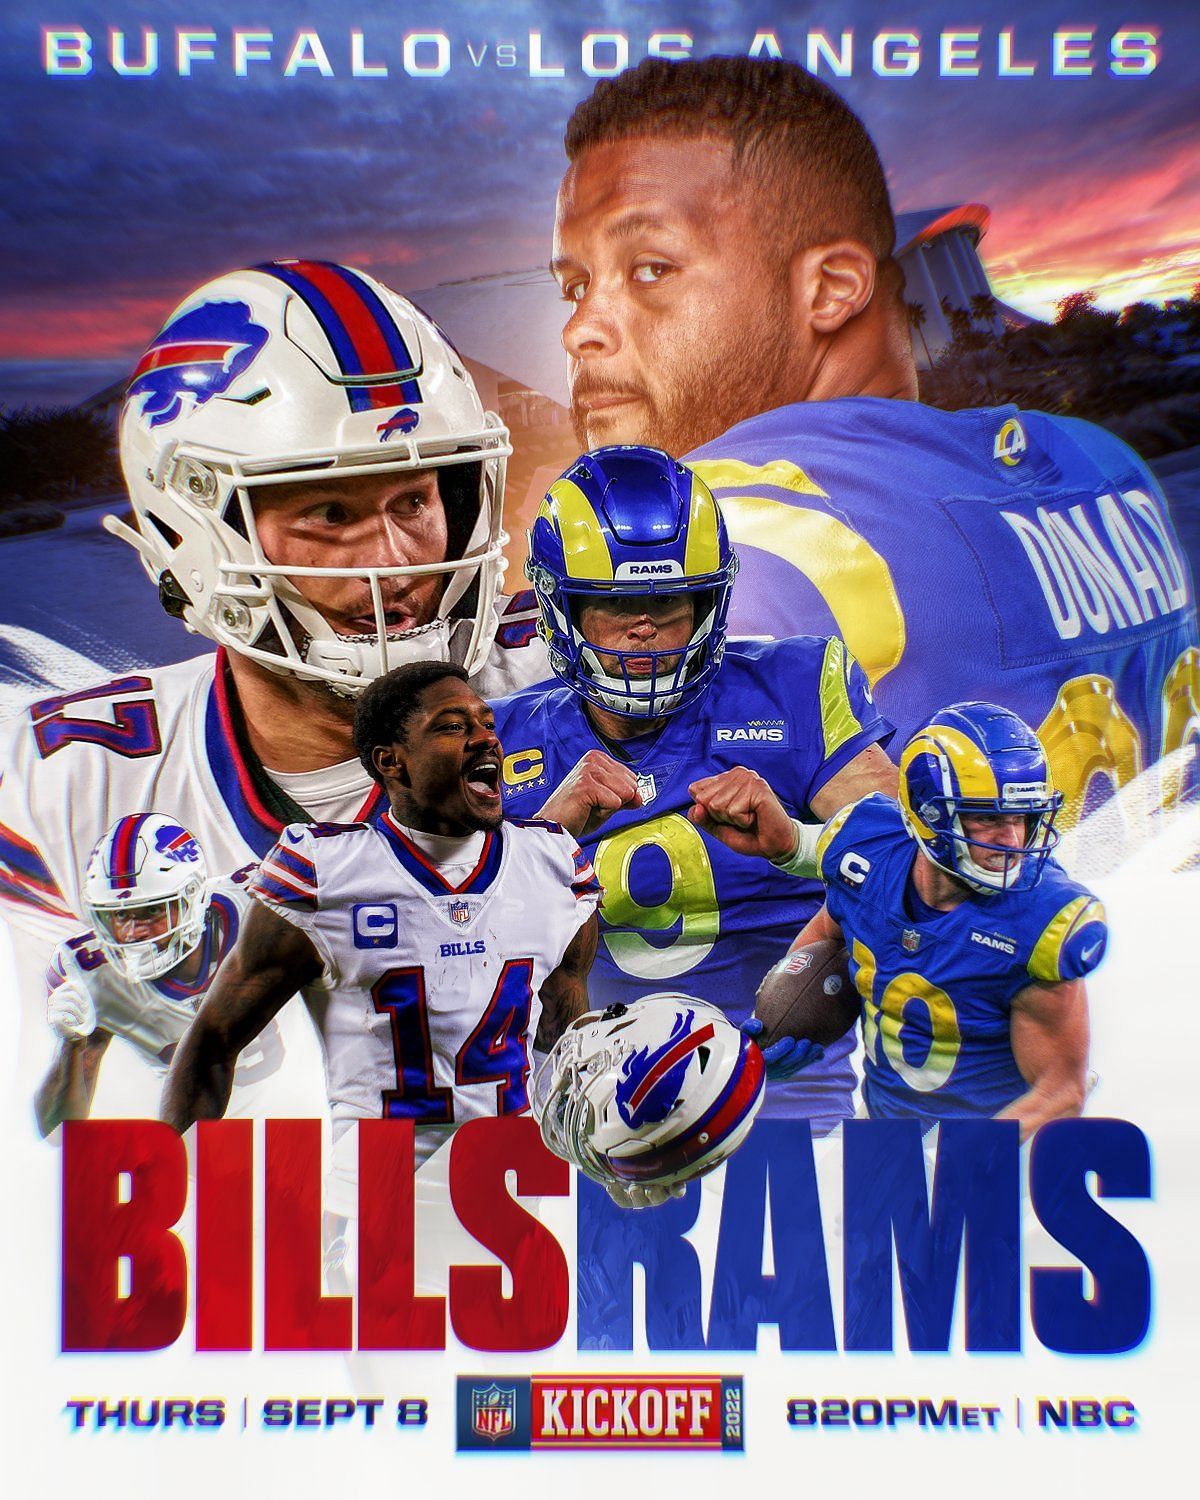 2022 NFL Schedule release - Bills @ Rams opening game